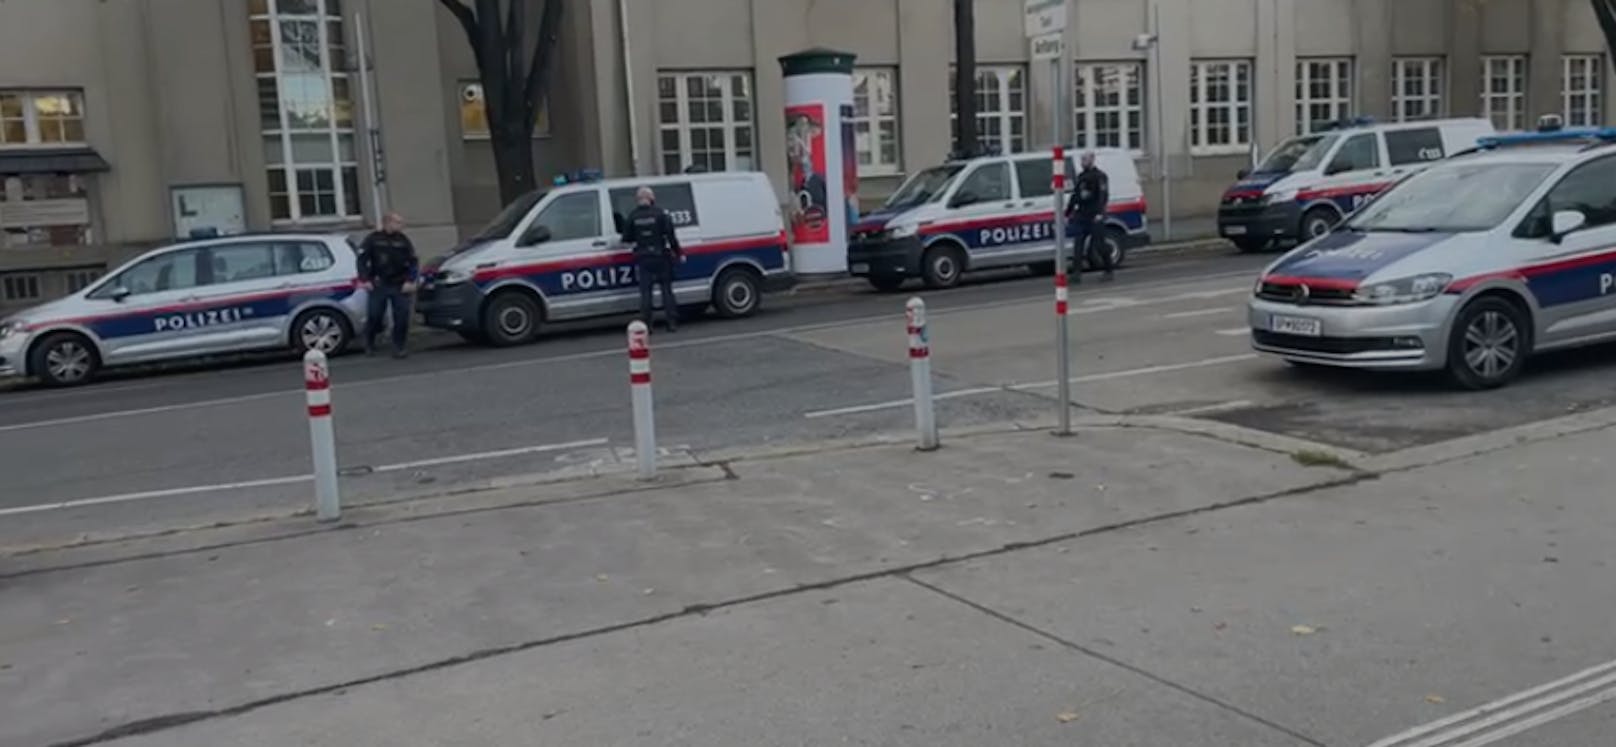 Polizei-Einsatz an der Berufsschule auf der Hütteldorfer Straße